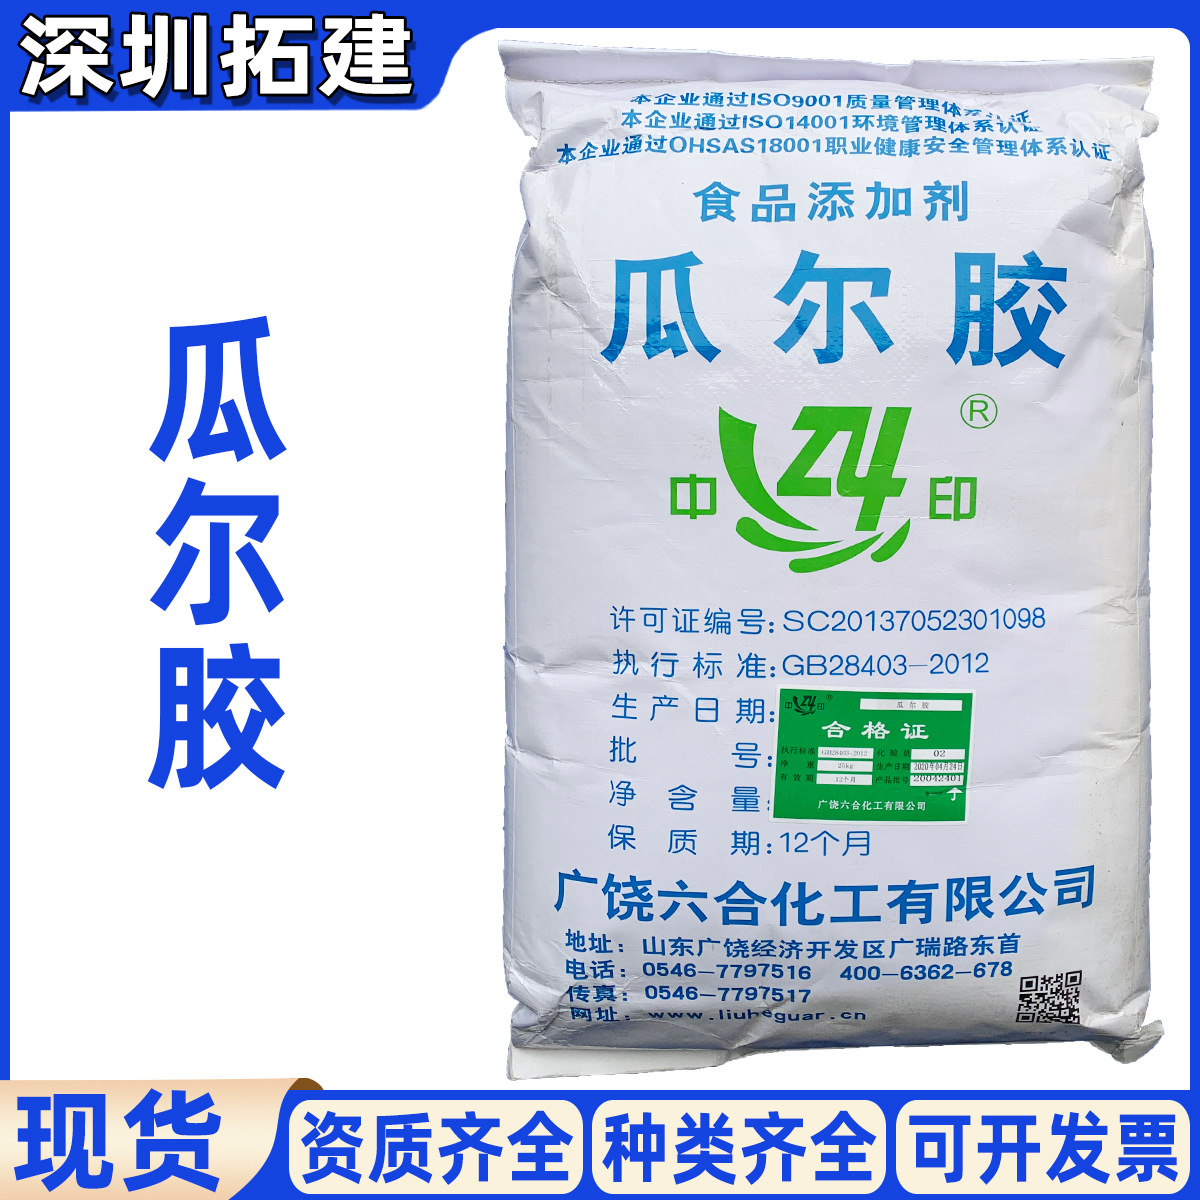 瓜尔胶 雪龙/六合 现货供应 食品级增稠剂 印度瓜尔胶 瓜儿豆胶